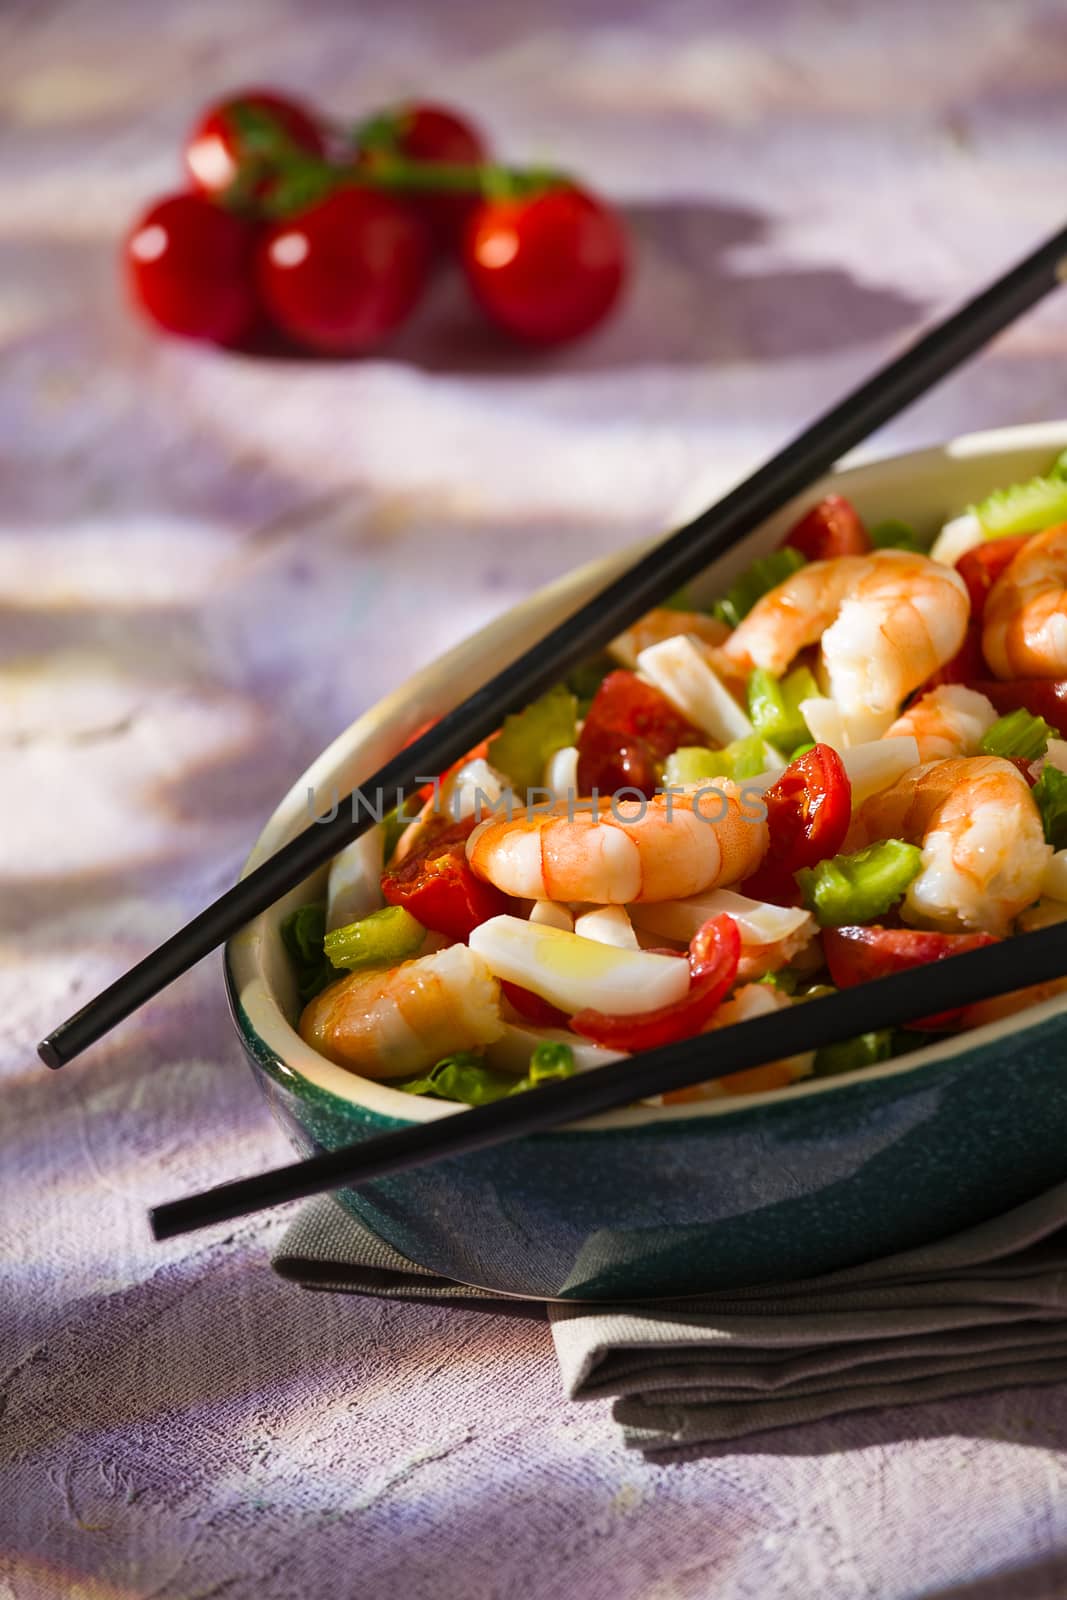 Salad of shrimps and chopsticks inside an oval bowl